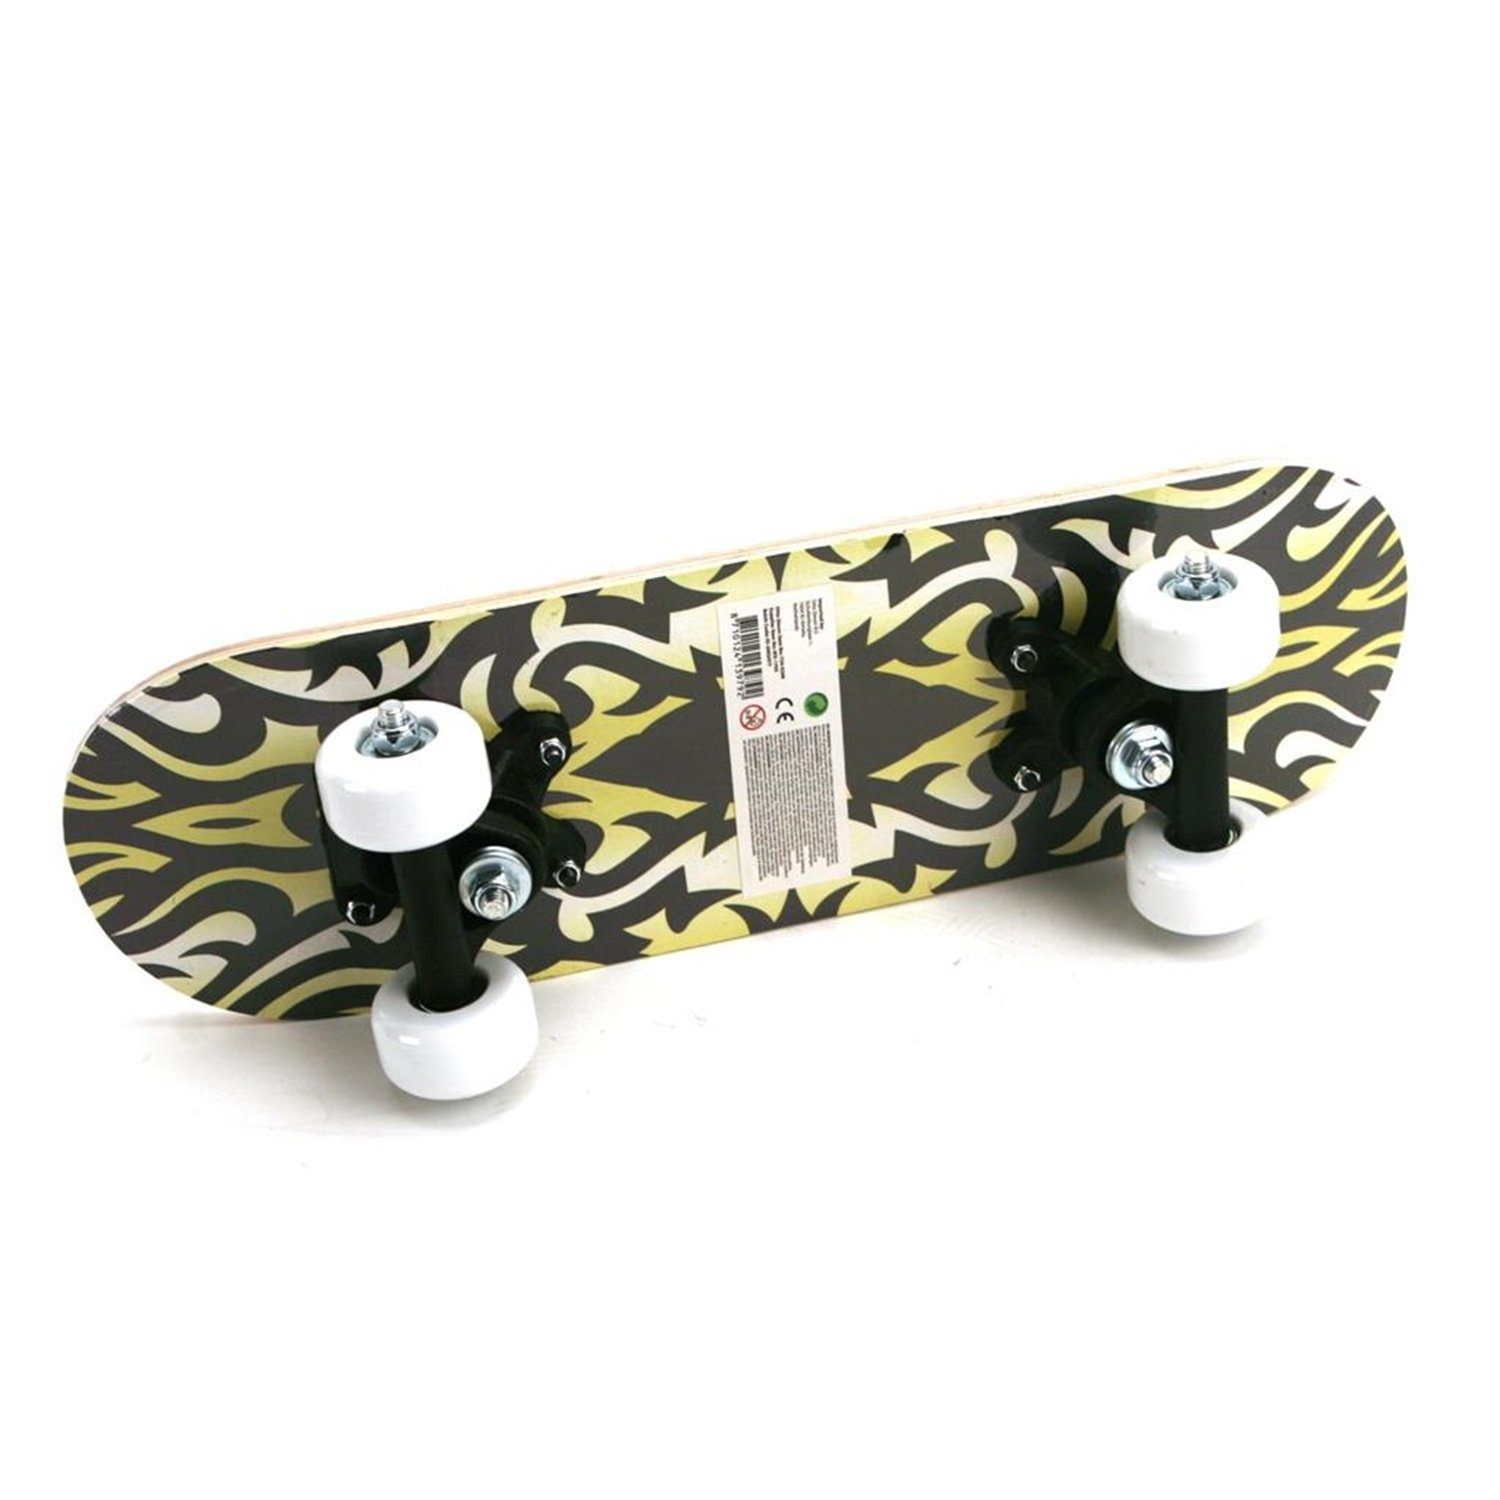 x Master Mini 734-0206 12 Tribal 43 cm Skateboard Spin Inlineskates